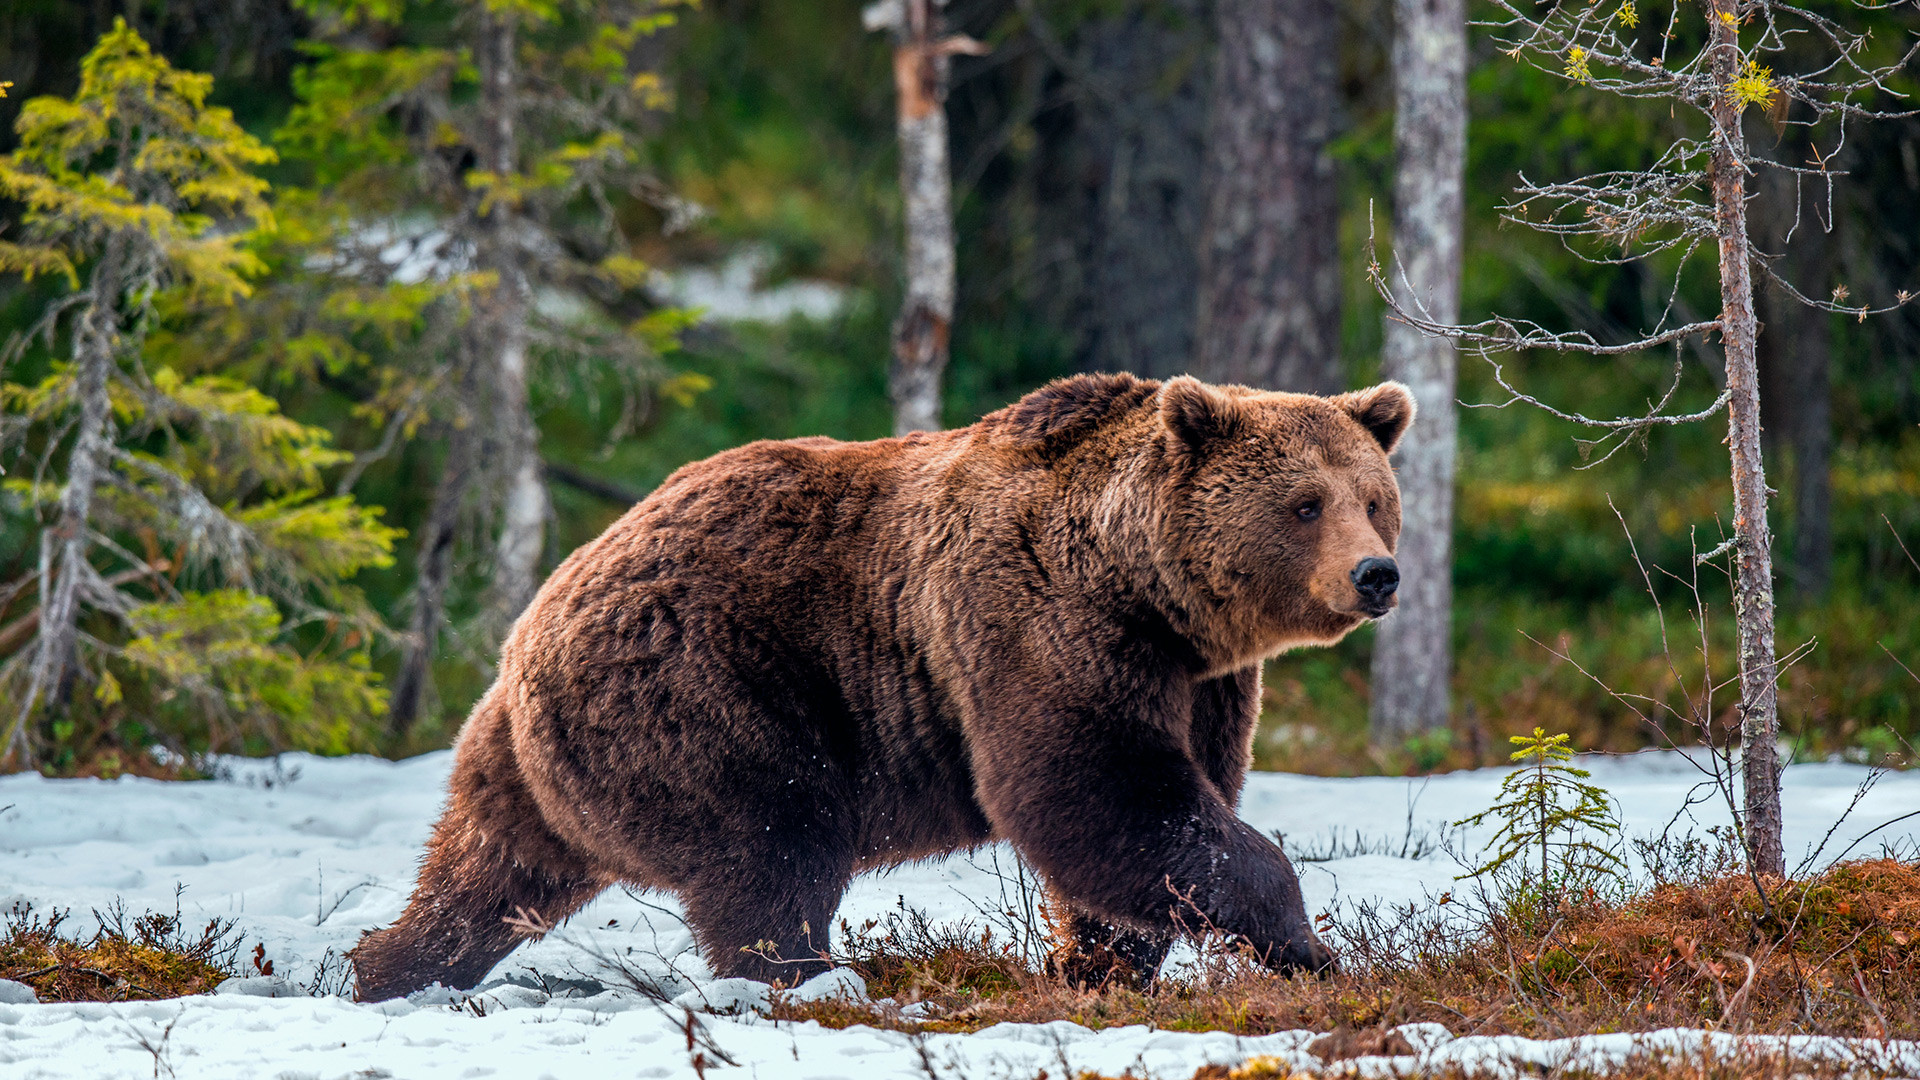 Europski mrki medvjed u divljini tijekom proljeća.

